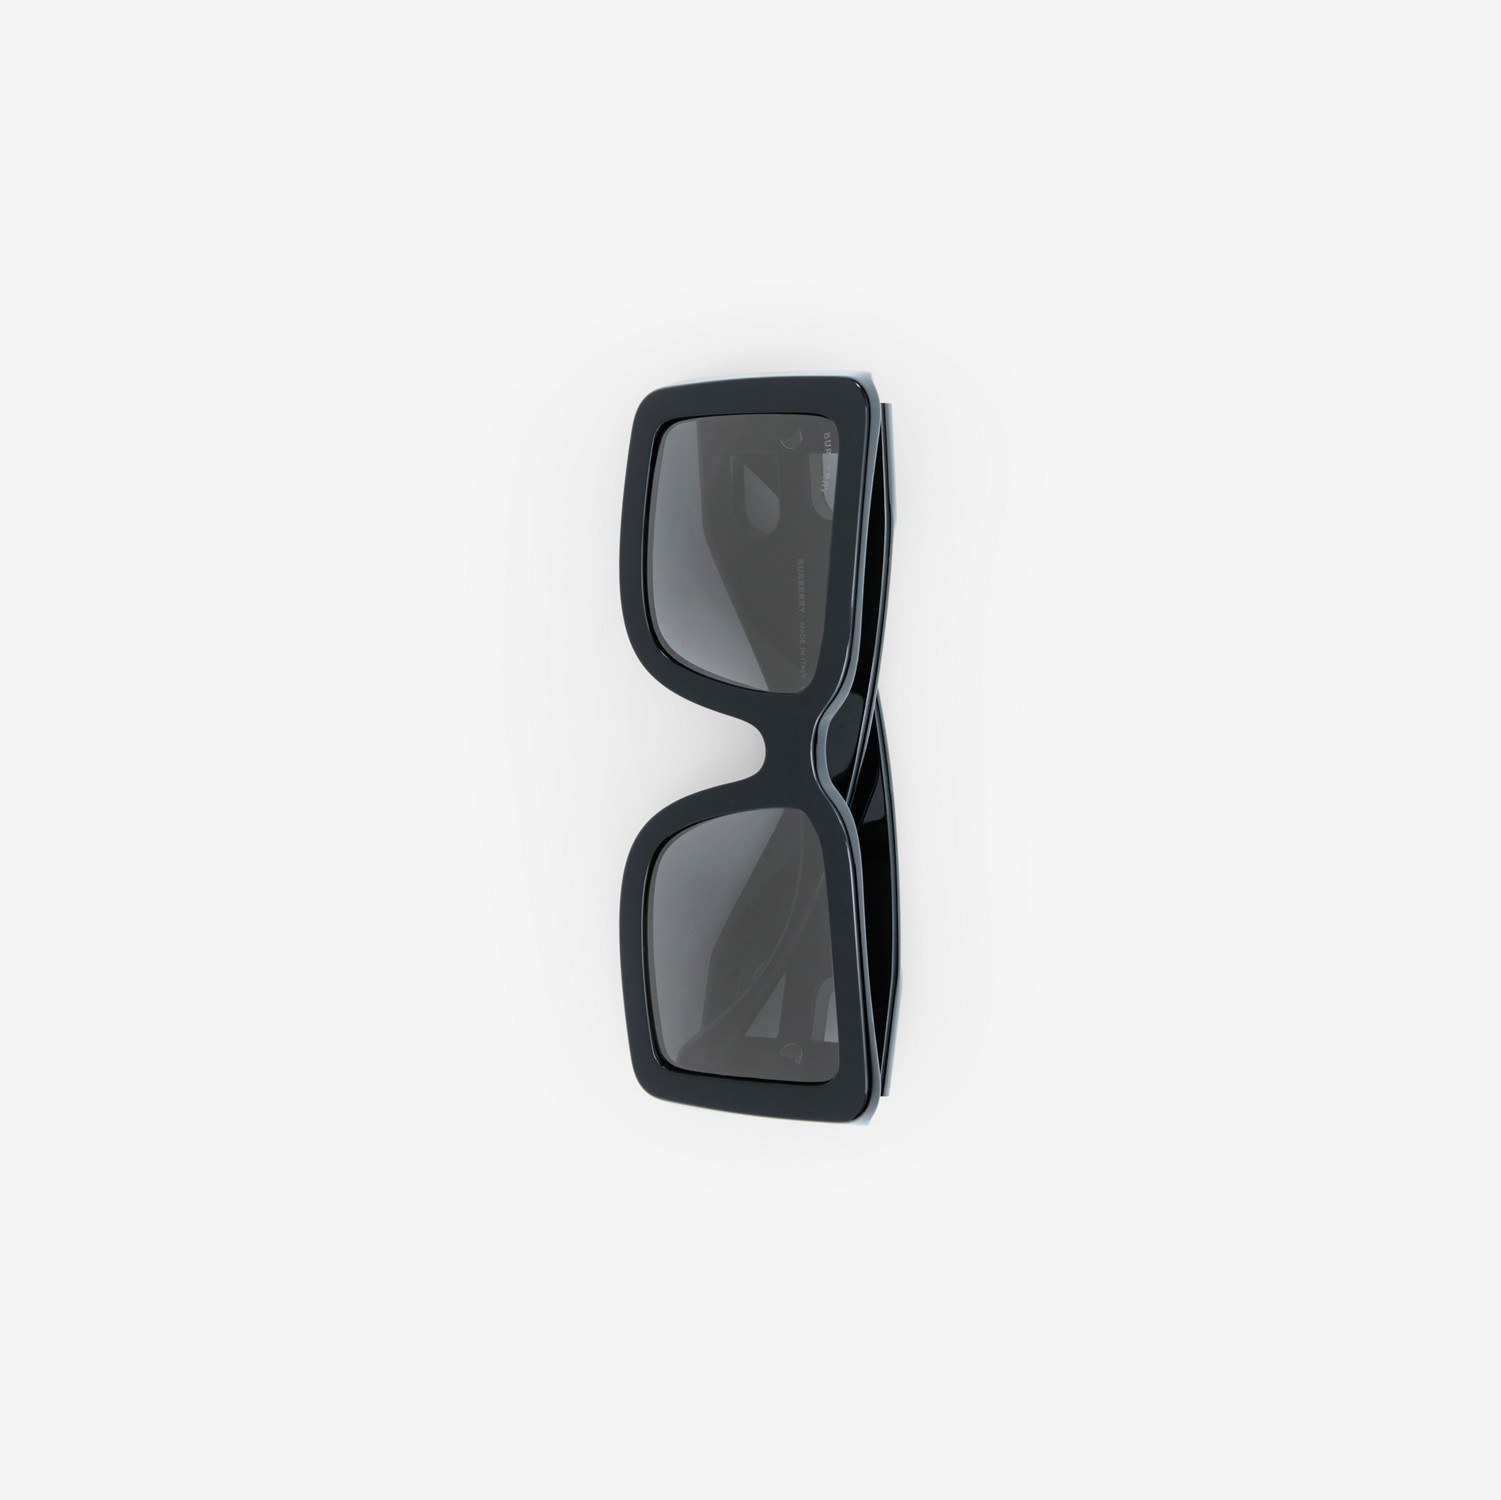 Sonnenbrille mit eckigem Gestell und B-Motiven (Schwarz) - Damen | Burberry®